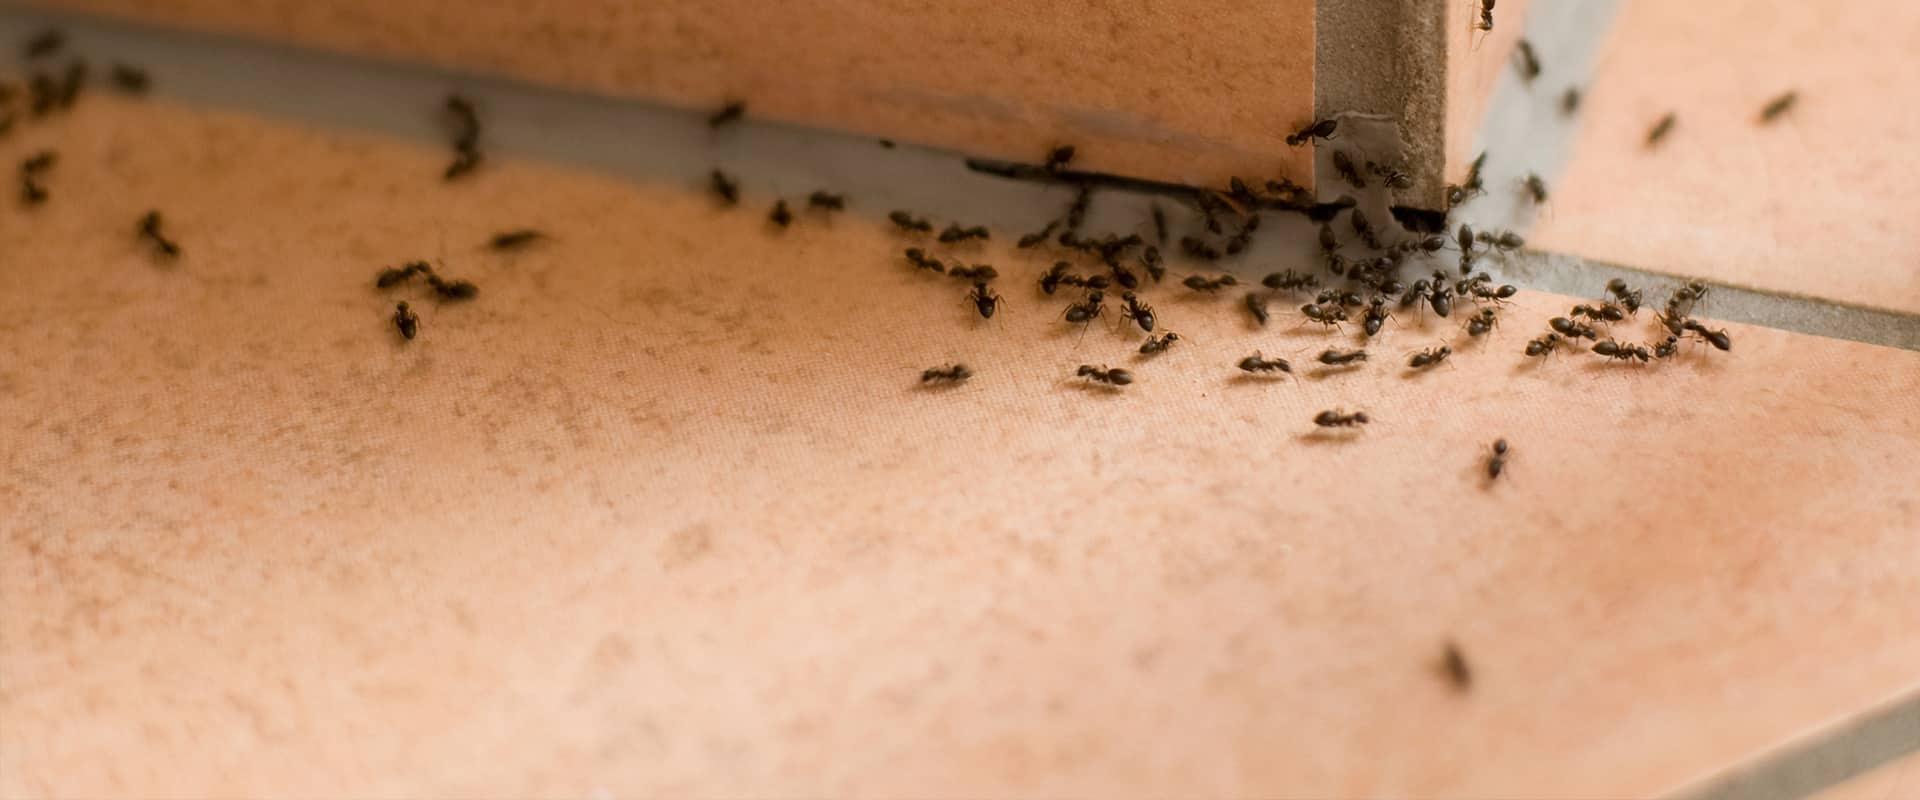 many ants on a patio in kansas city missouri